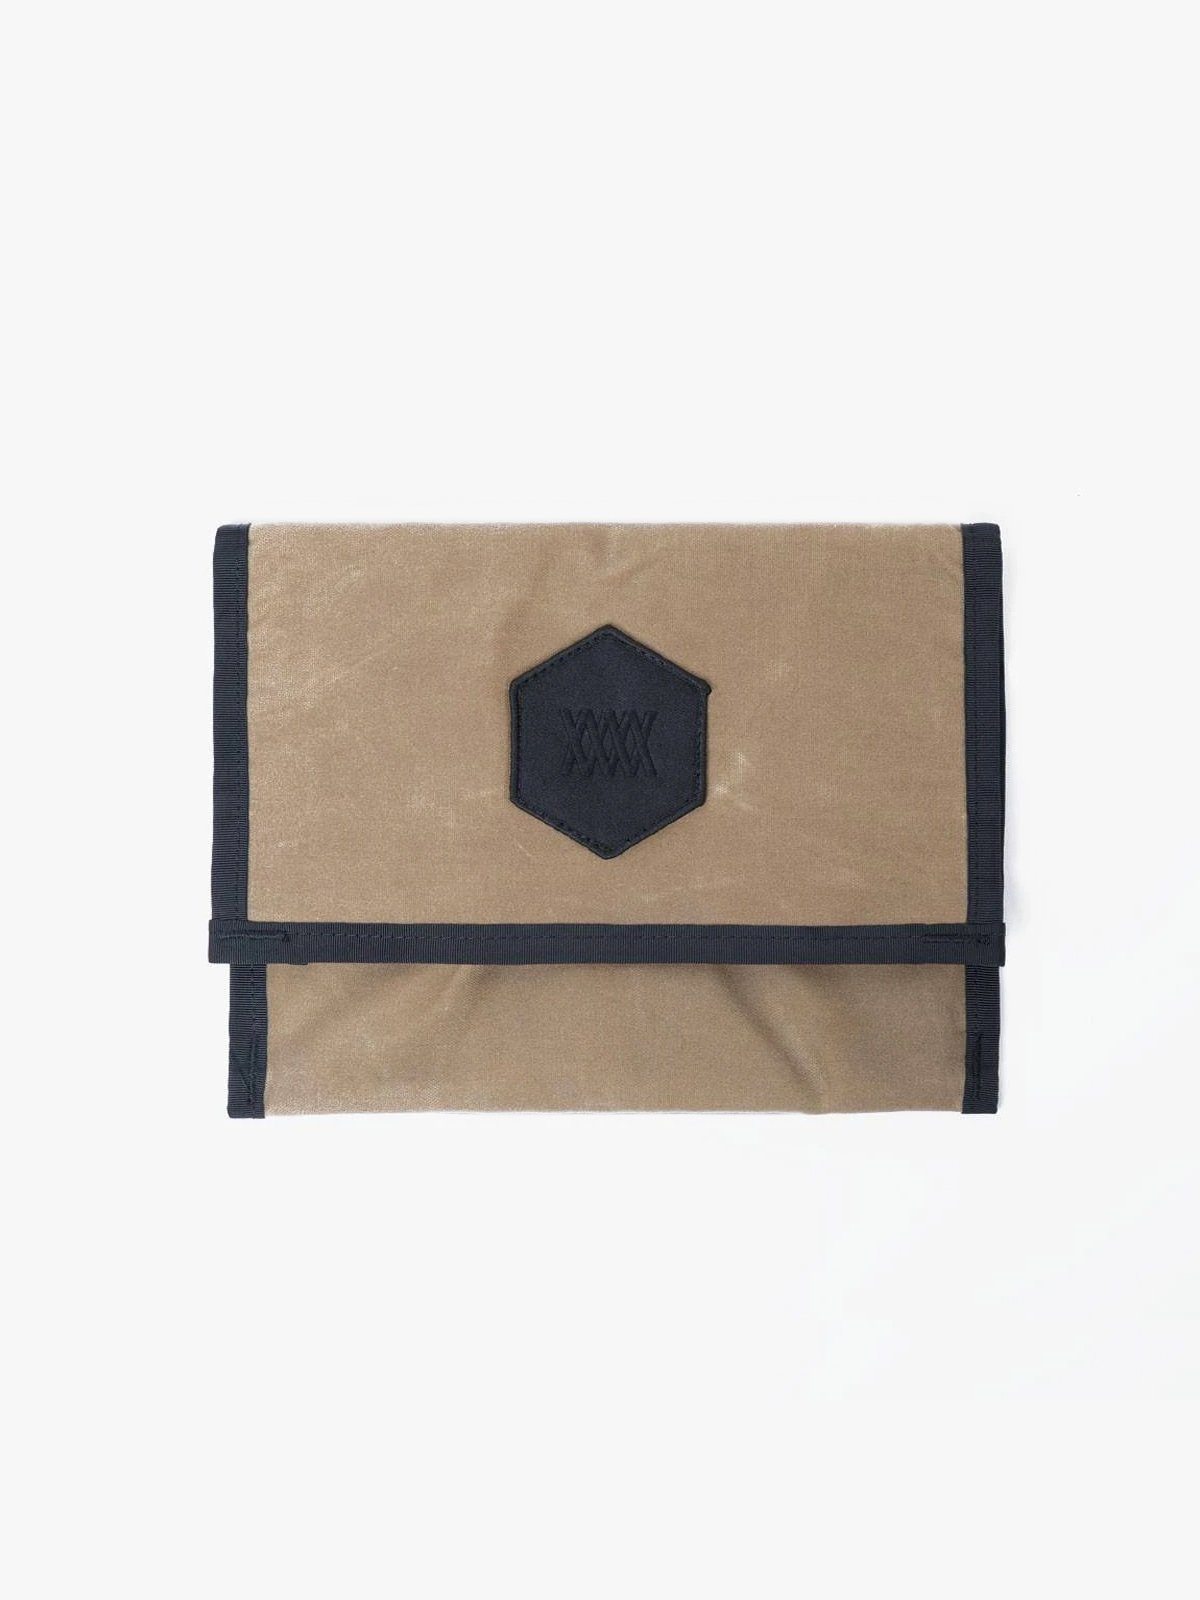 Arkiv Mini Folio by Mission Workshop - Säänkestävät laukut ja tekniset vaatteet - San Francisco & Los Angeles - Rakennettu kestämään - ikuinen takuu